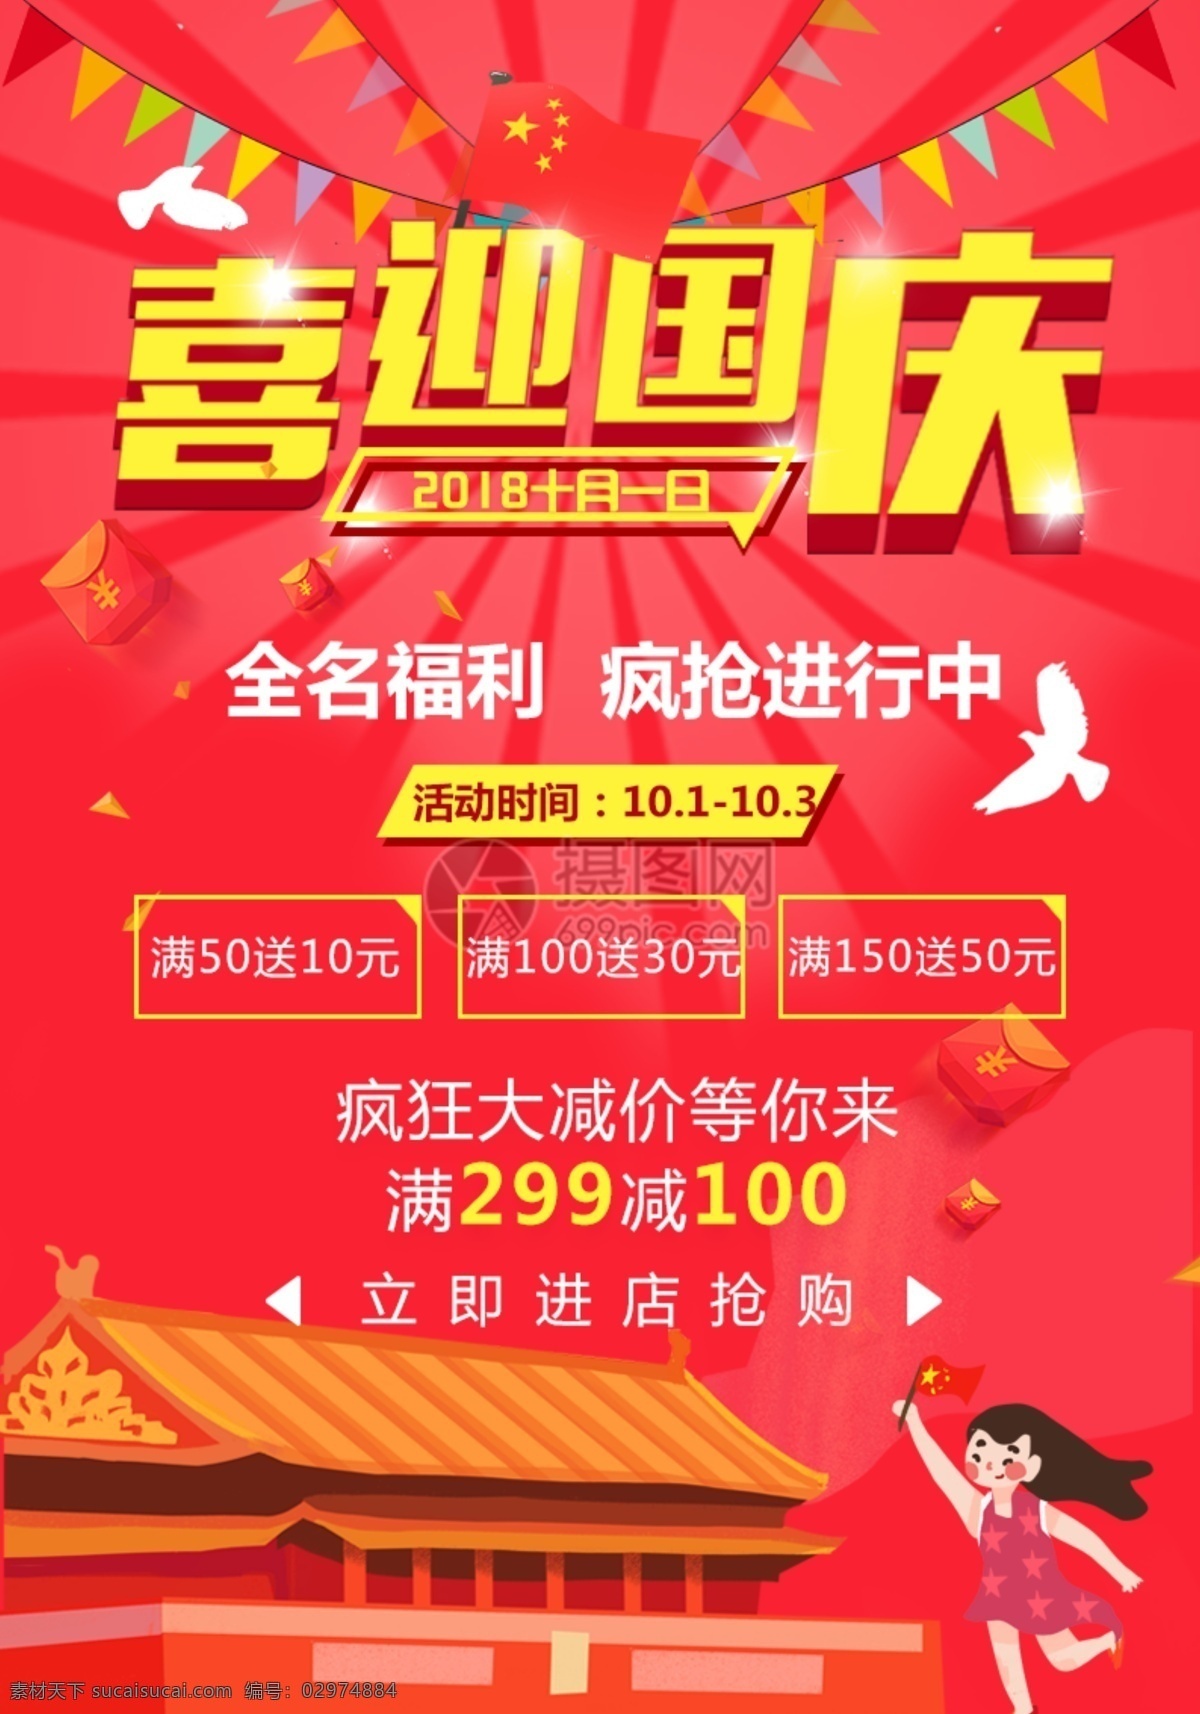 国庆节 促销 海报 喜迎国庆 节日 十一 黄金周 国庆 红色